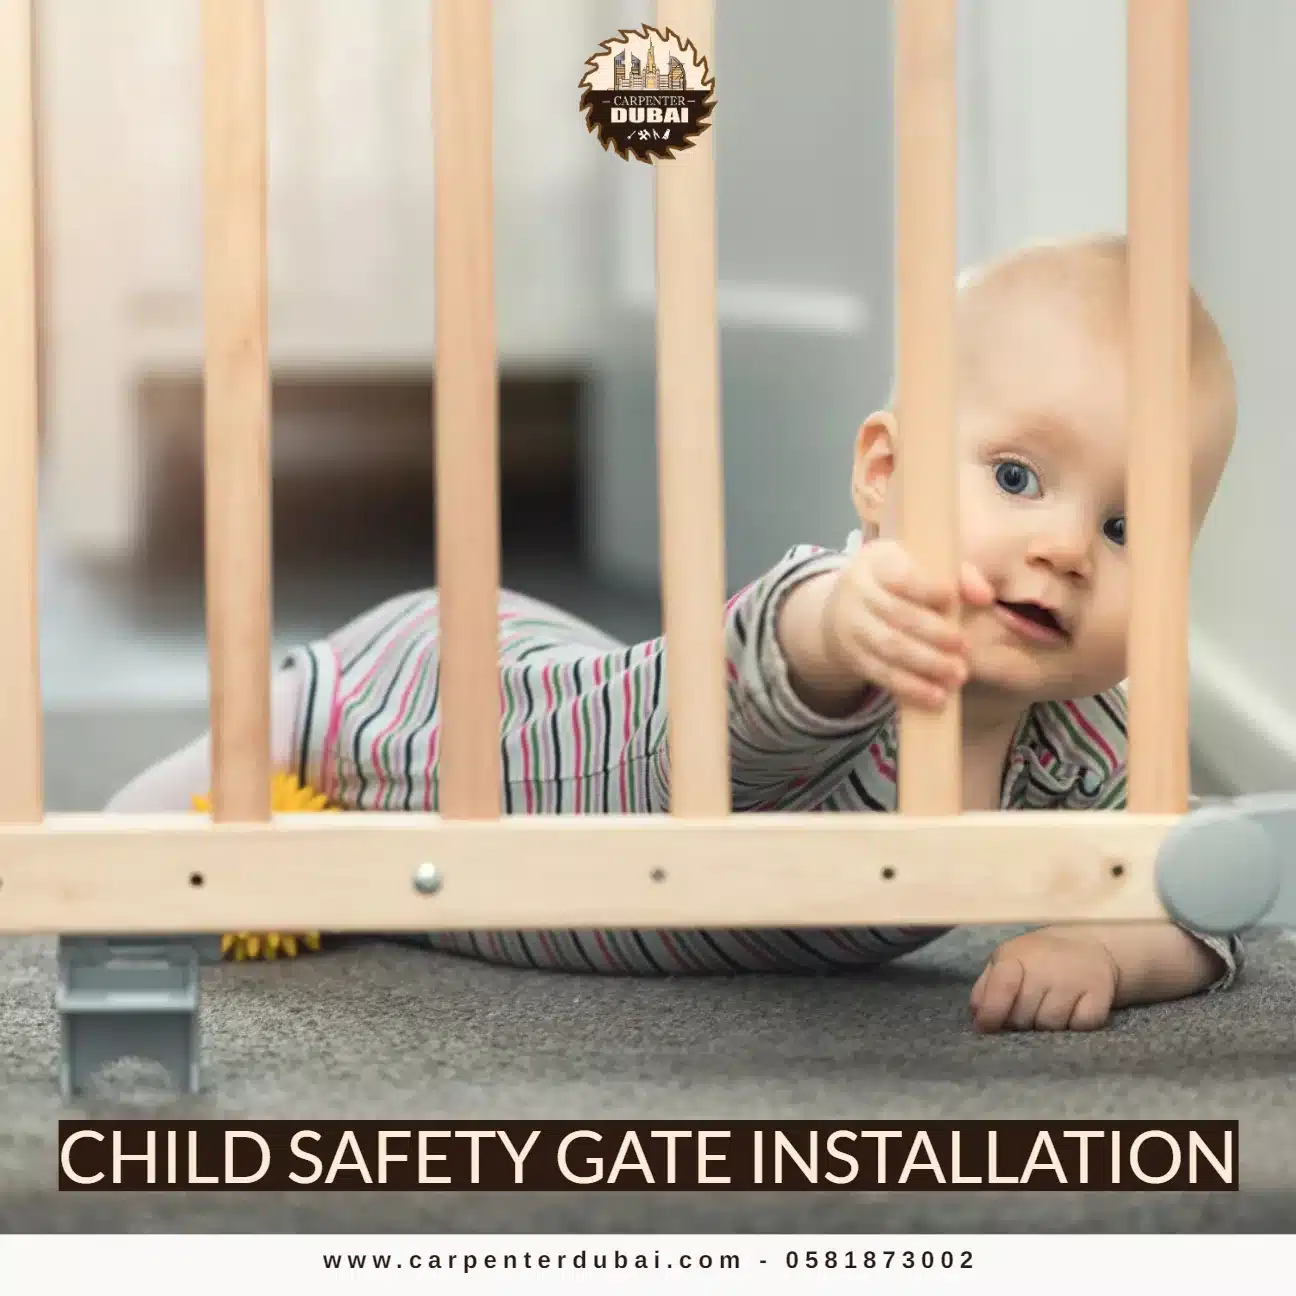 Child safety gate installation